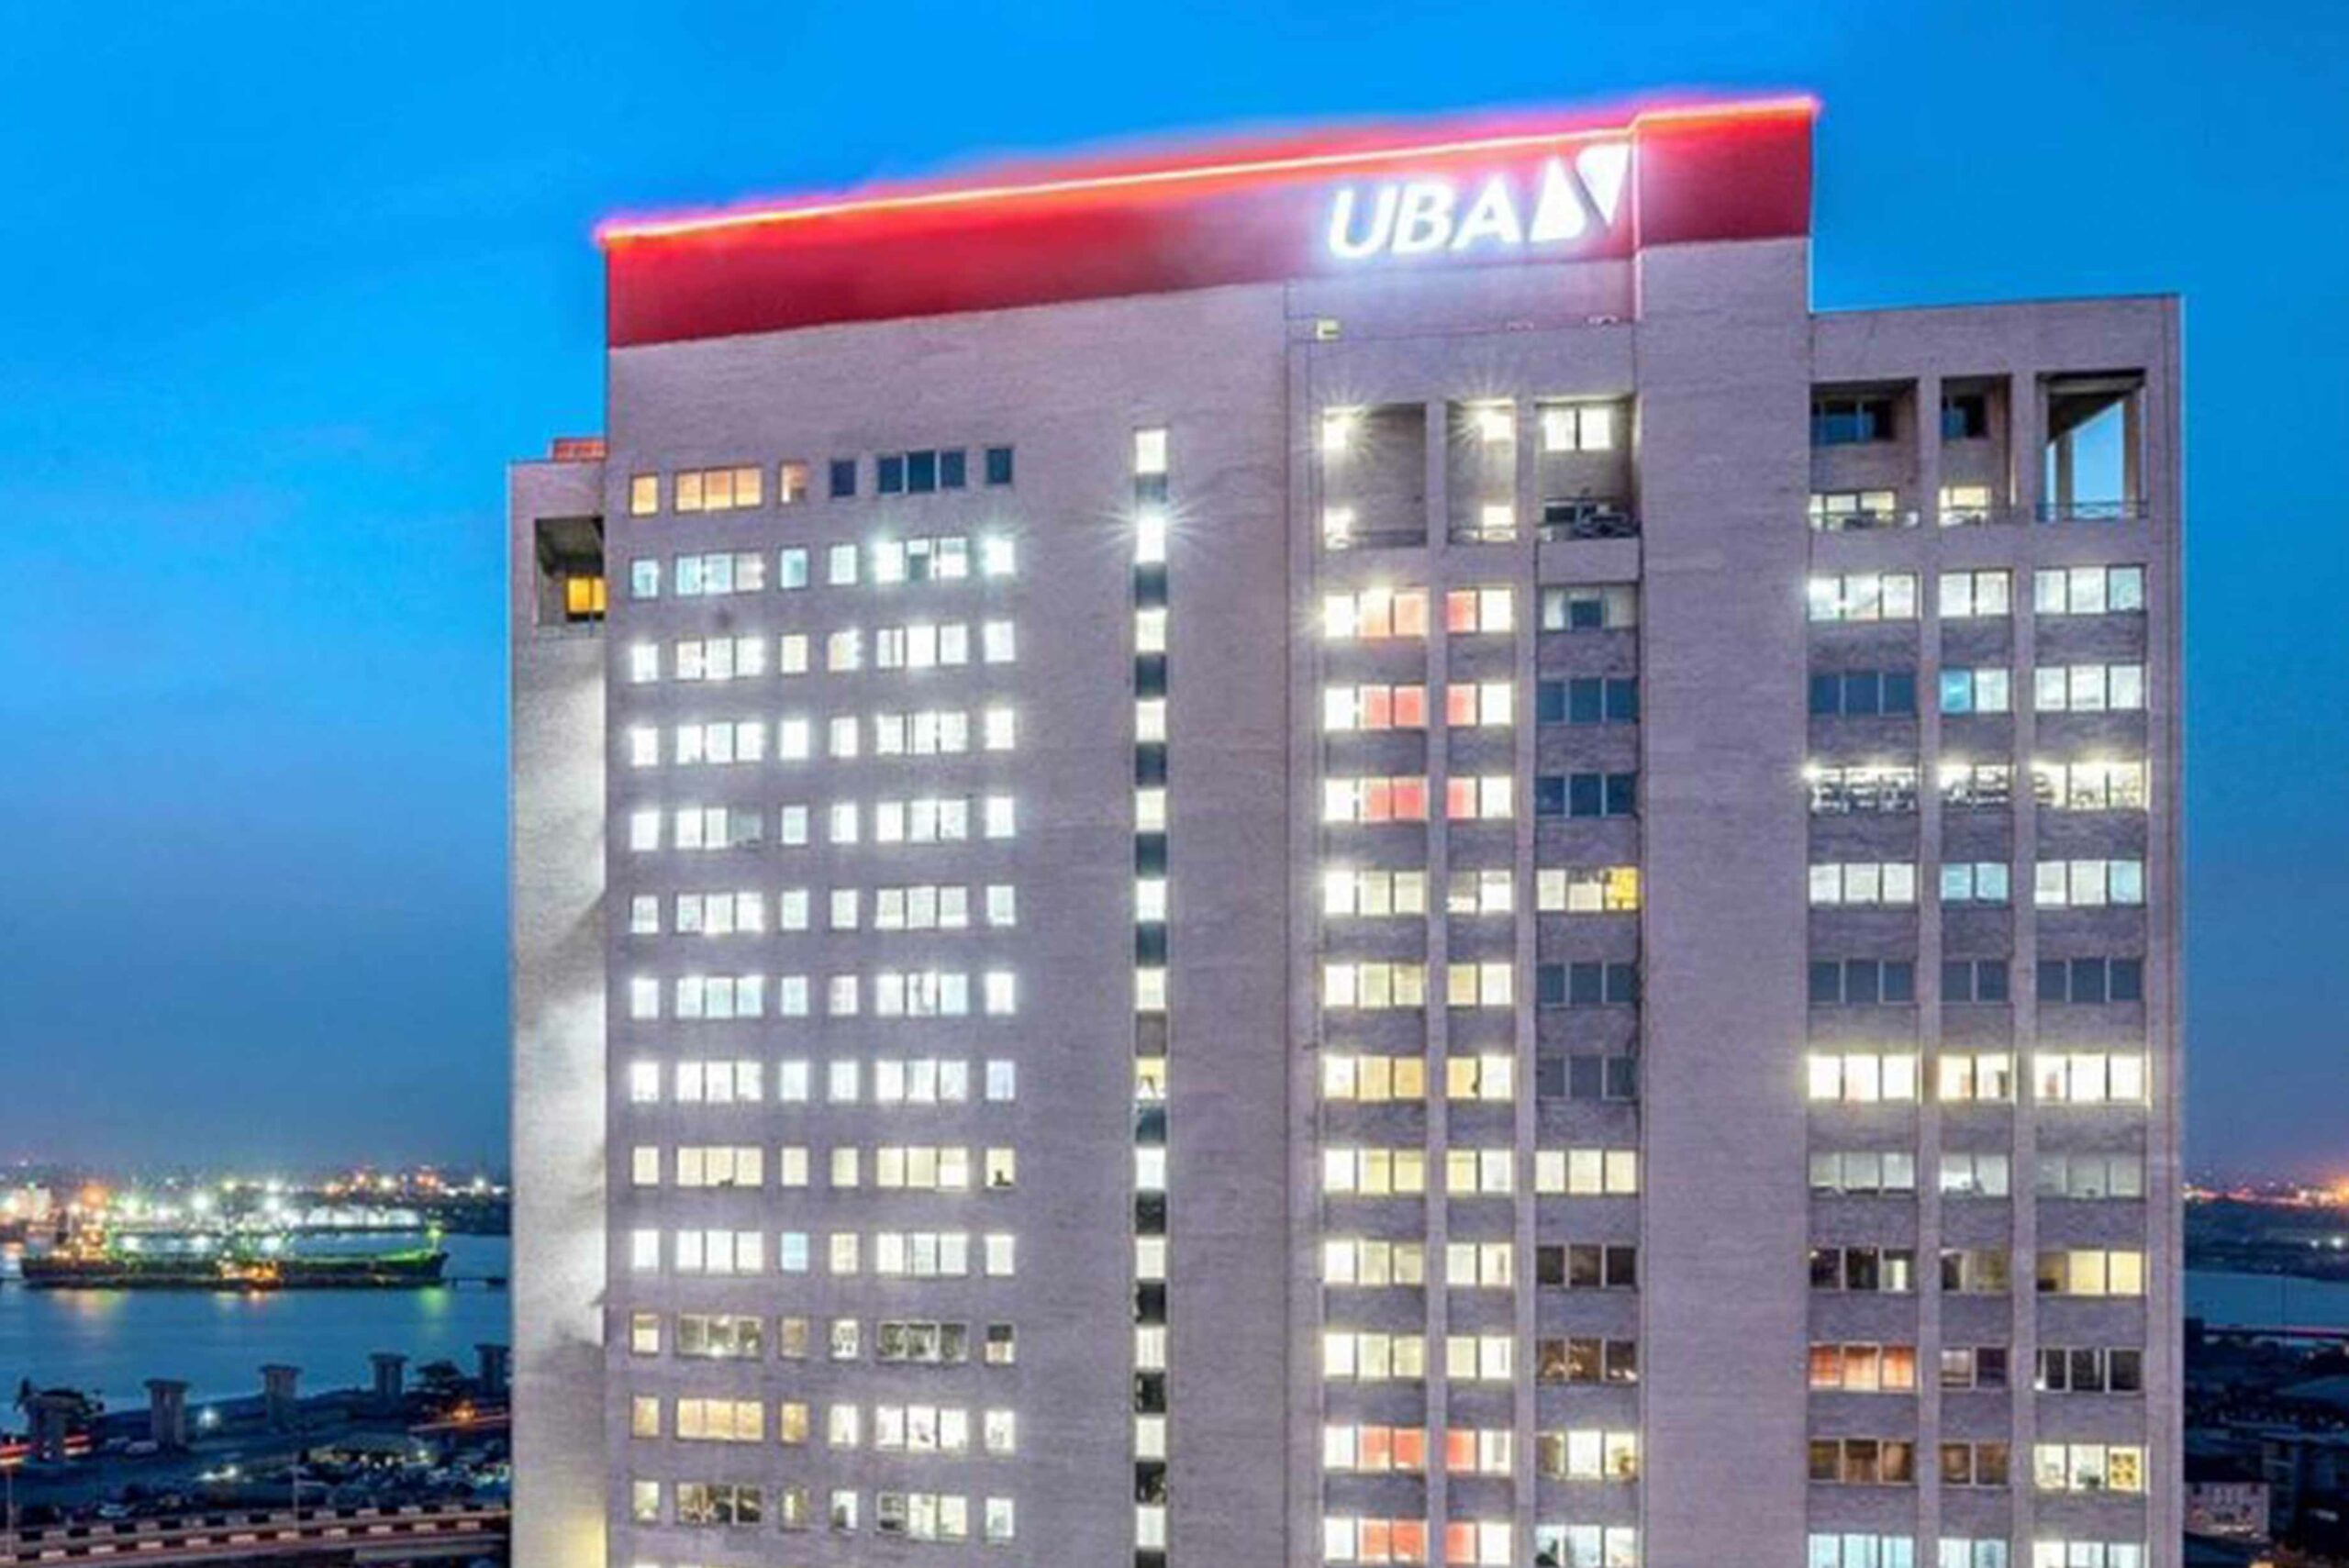 UBA enregistre une croissance des revenus de 33% en glissement annuel et annonce un dividende intérimaire de 20 000 par action